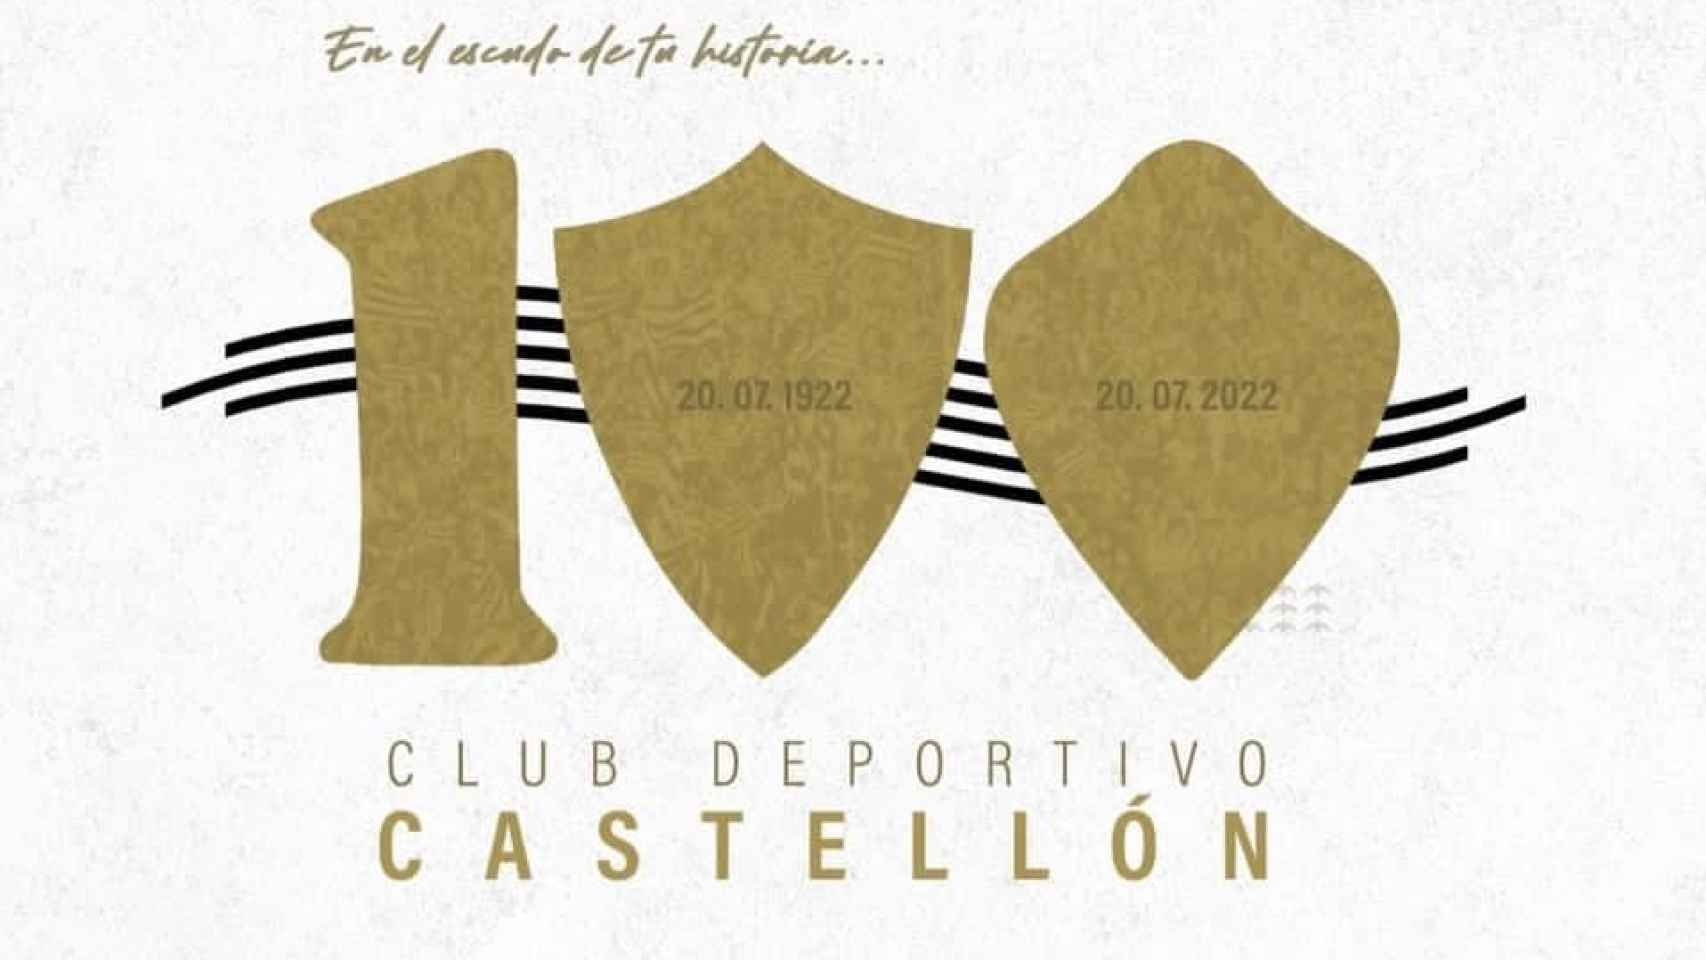 Cartel conmemorativo del Castellón por su centenario